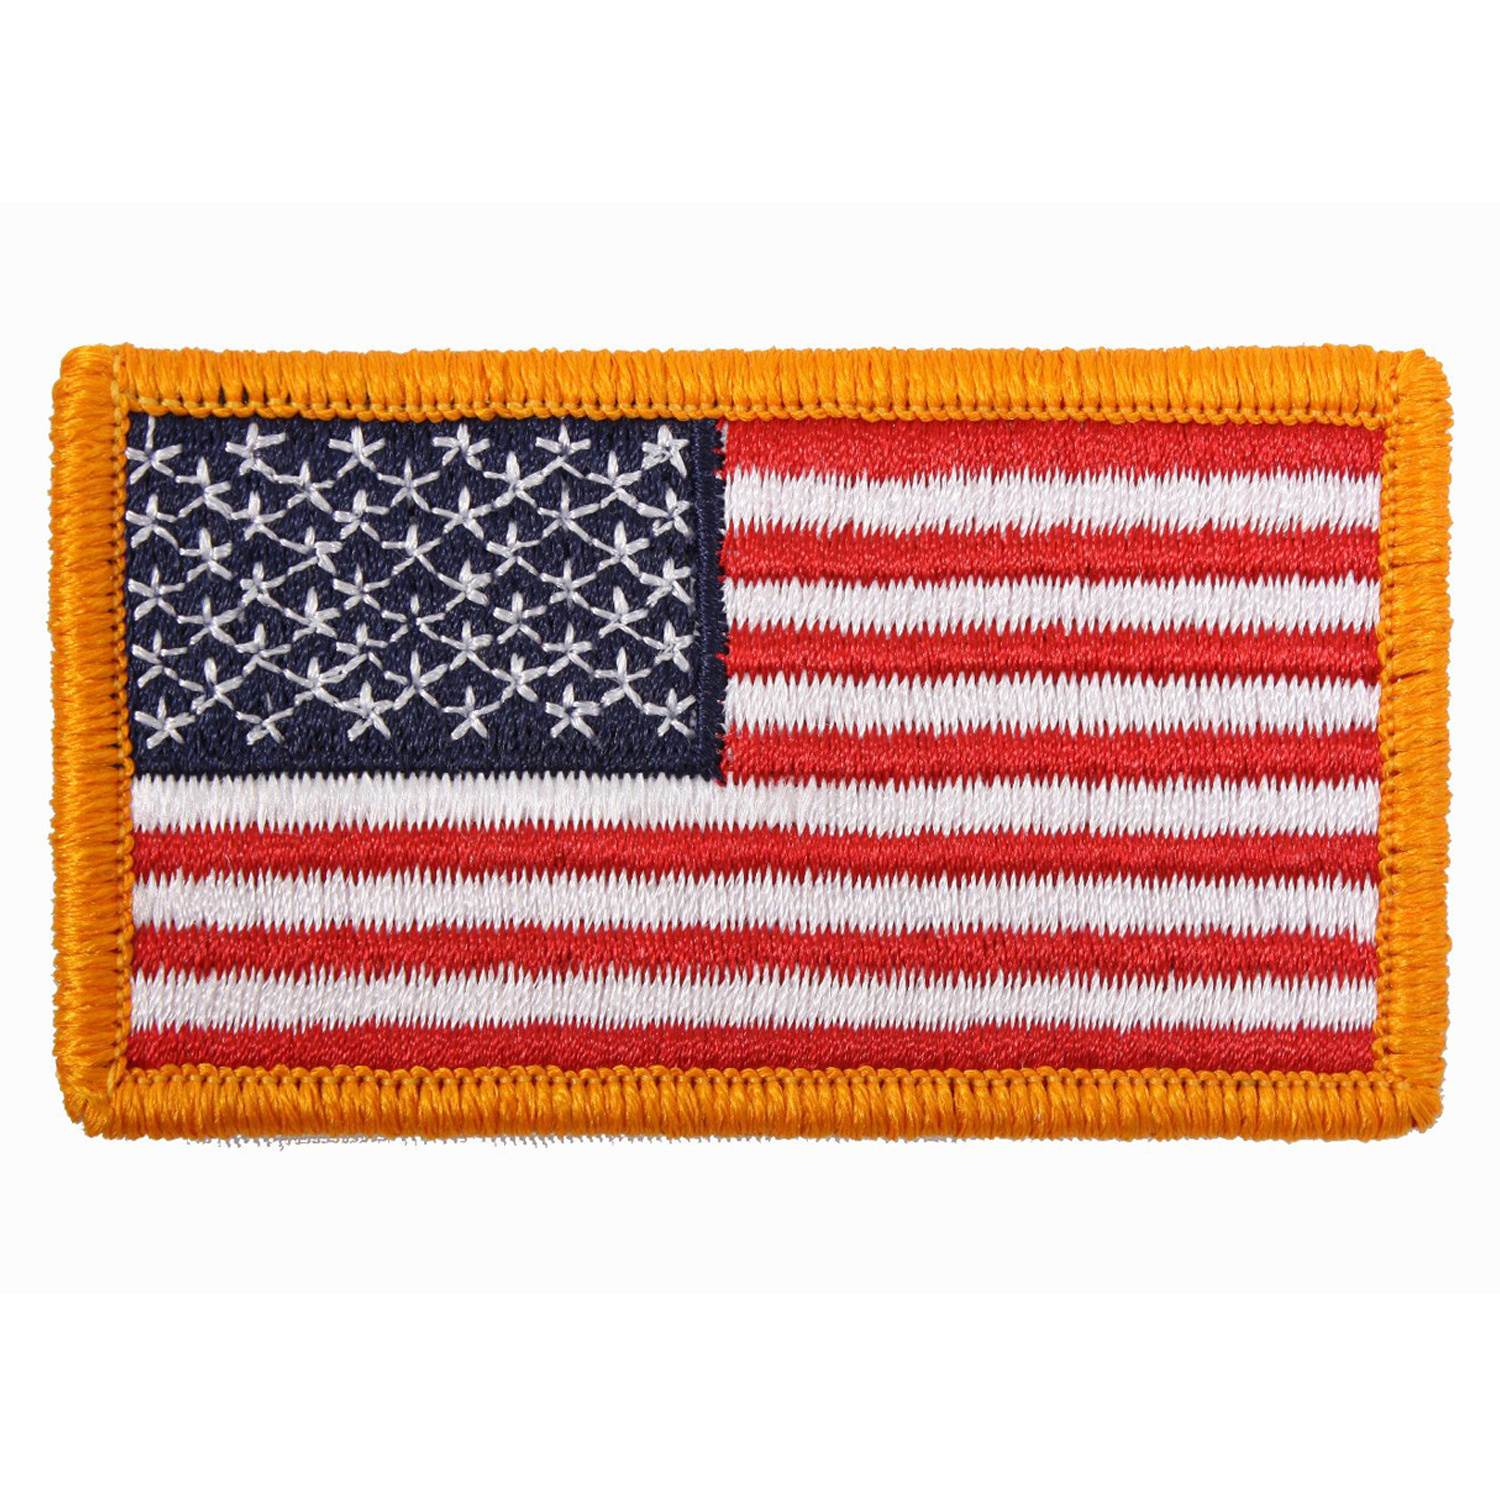 nášivka US vlajka 4,5x8,5 cm oranžový okraj